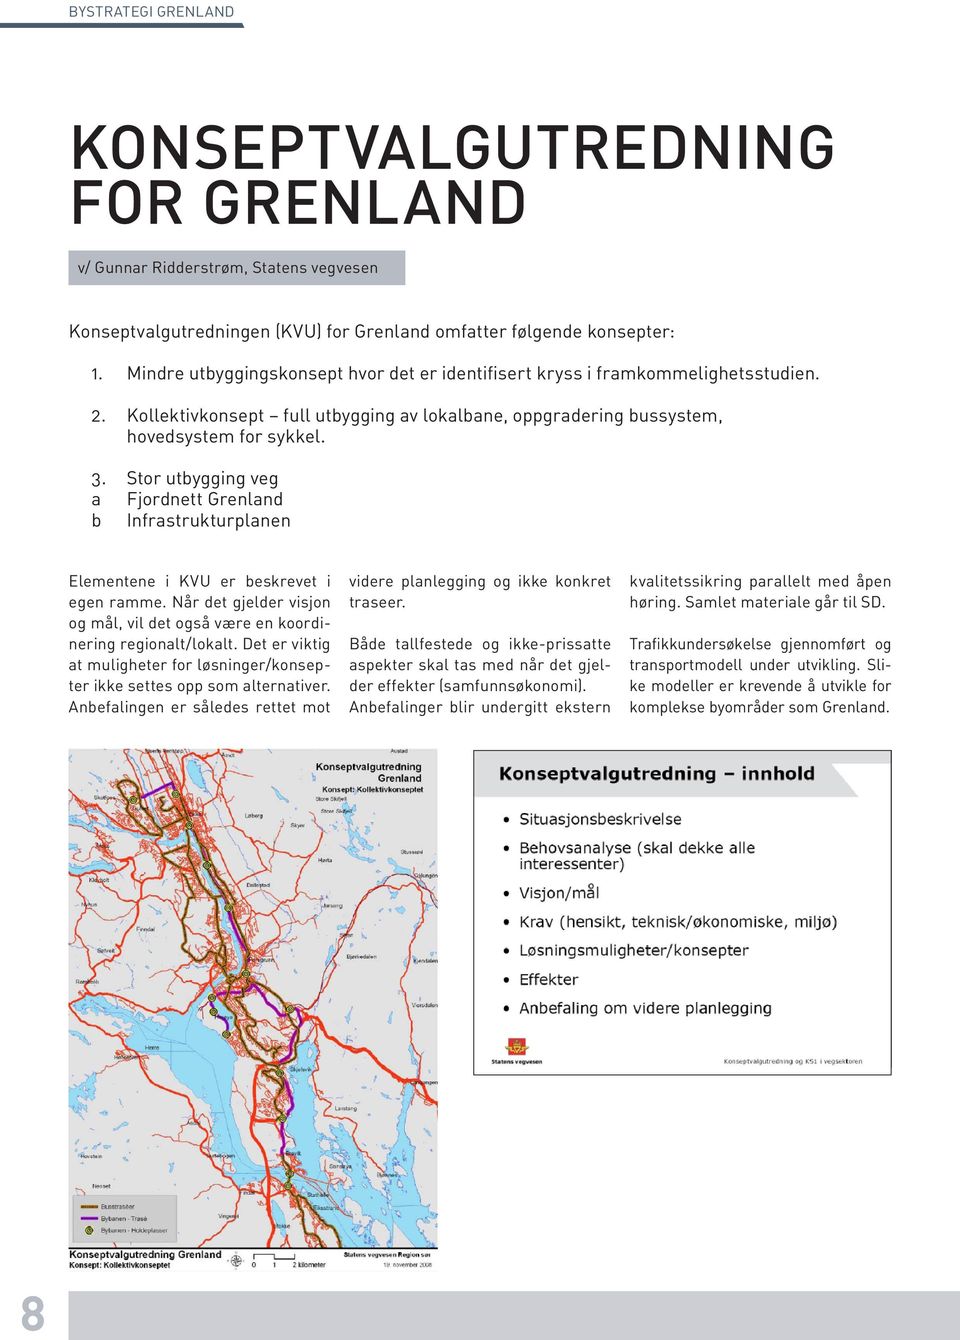 Stor utbygging veg a Fjordnett Grenland b Infrastrukturplanen Elementene i KVU er beskrevet i egen ramme. Når det gjelder visjon og mål, vil det også være en koordinering regionalt/lokalt.